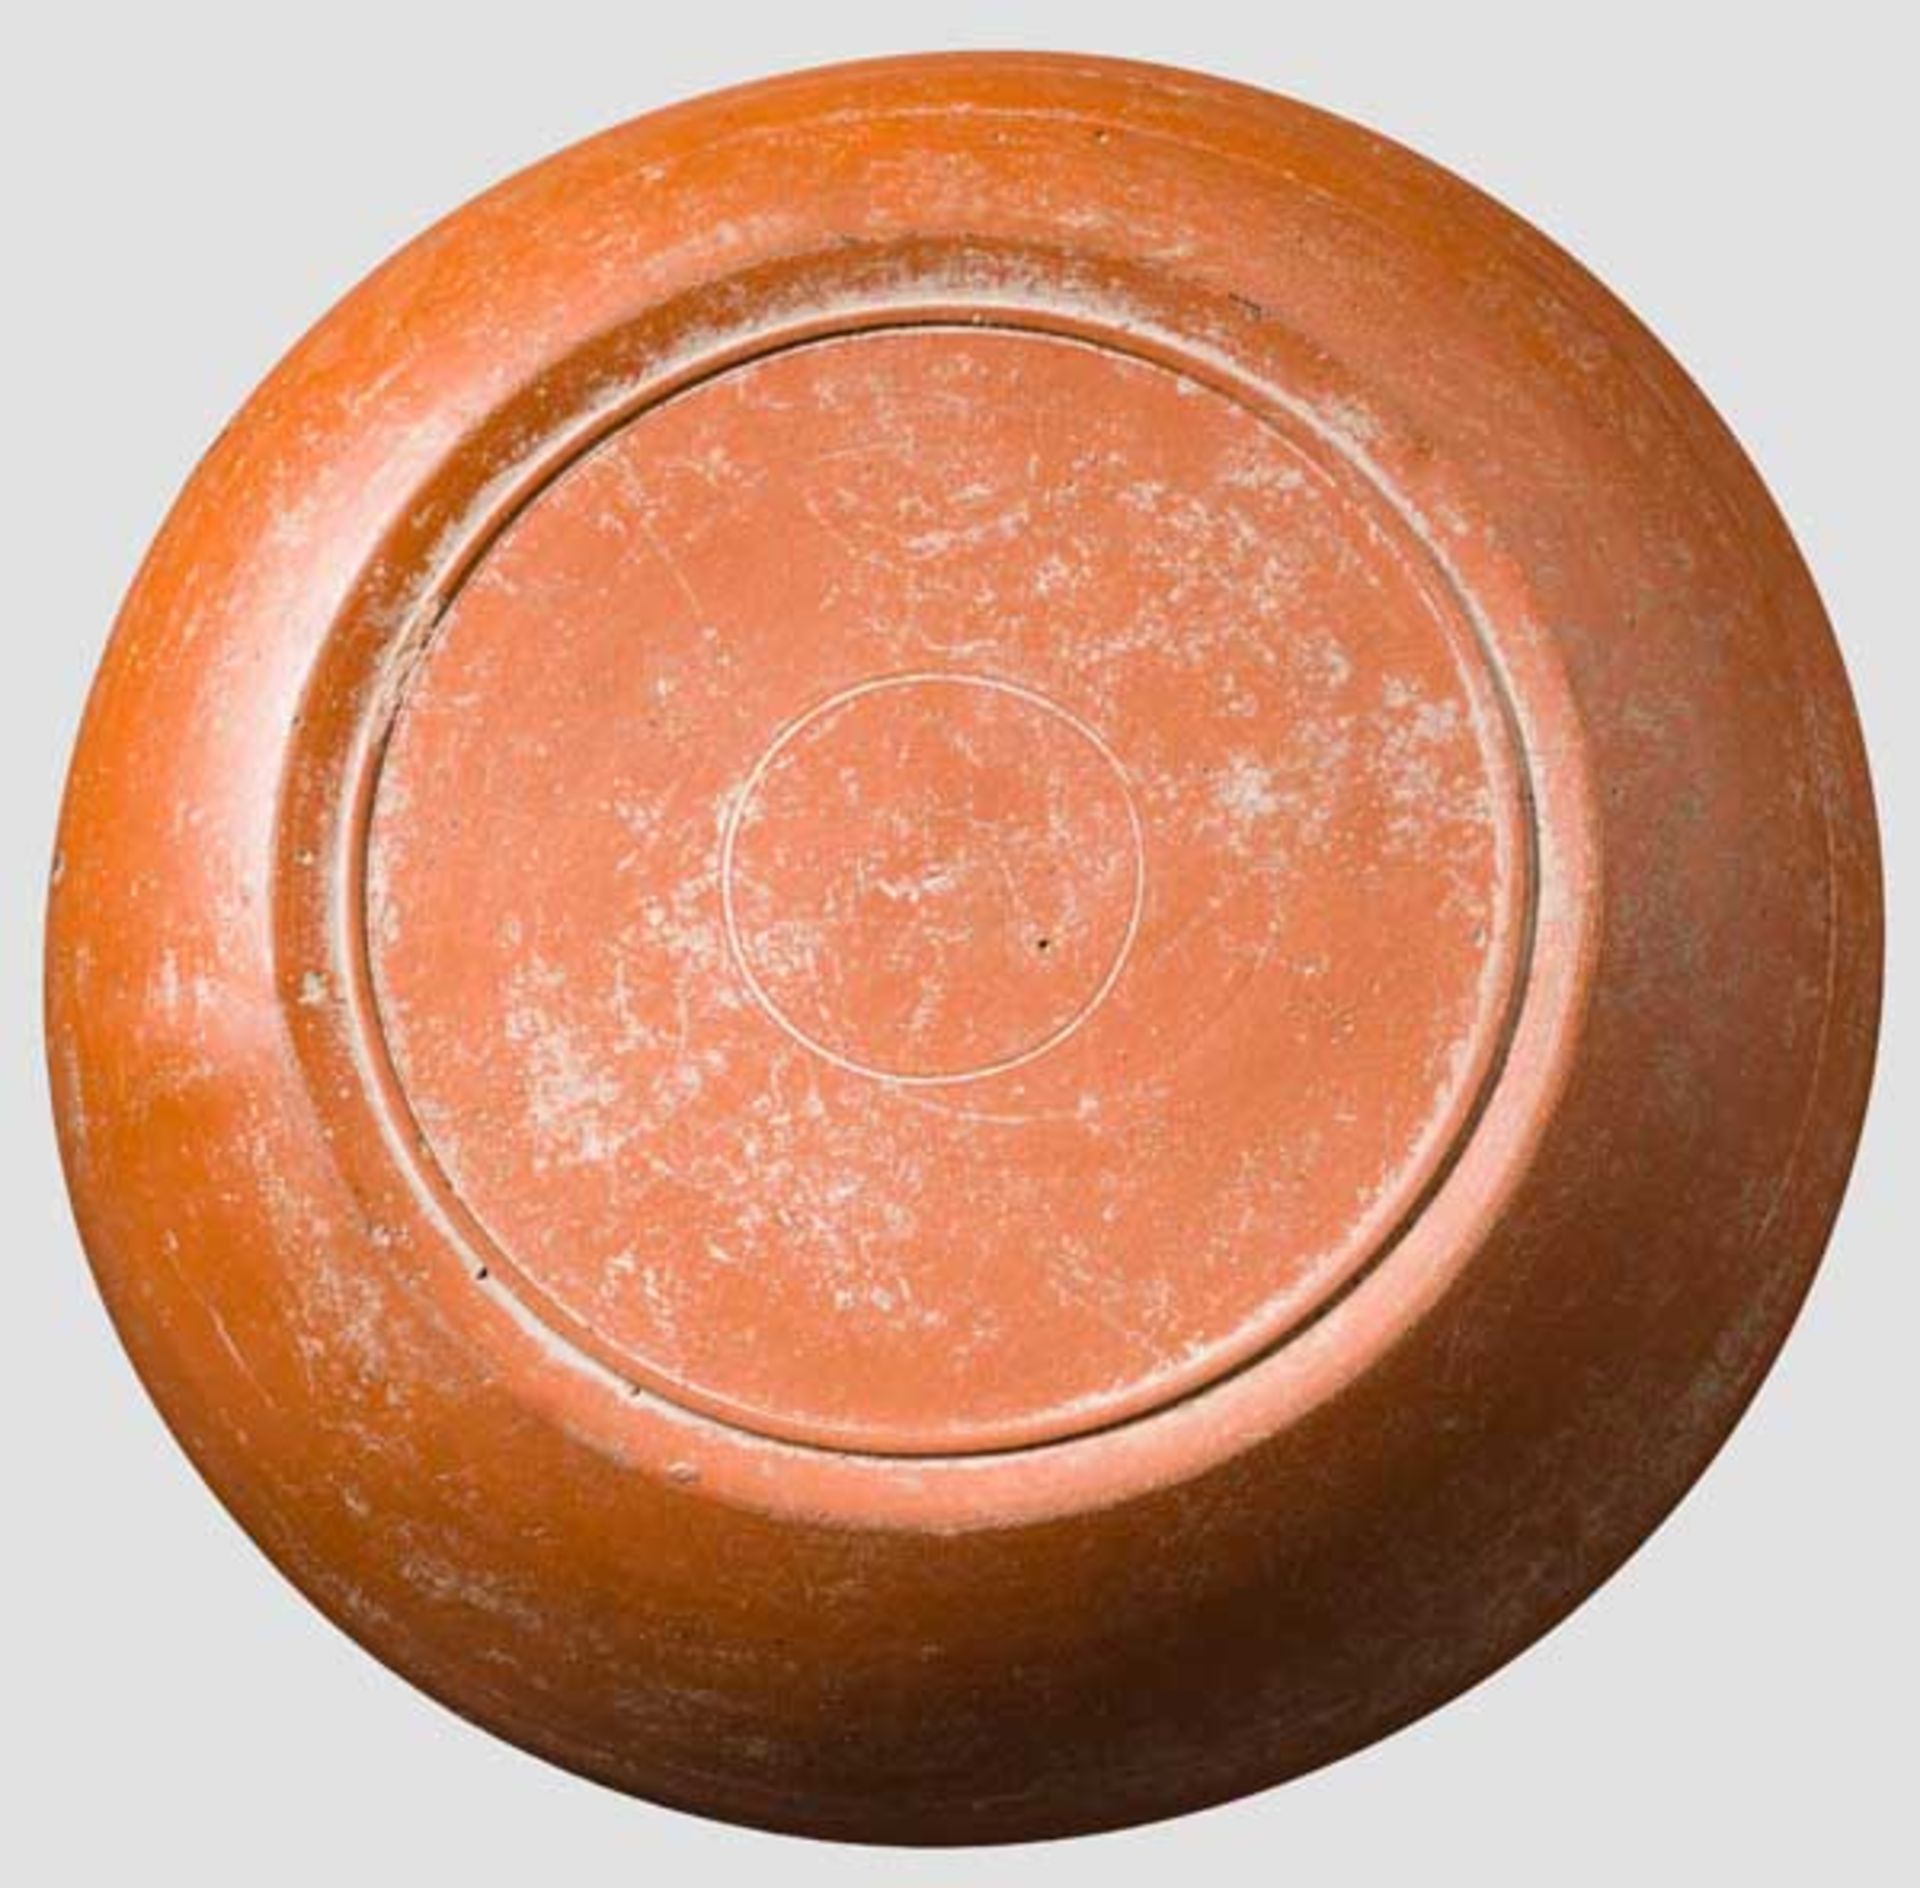 Teller, sigillata chiara C, 2. Hälfte 4. Jhdt. bis um 400 n. Chr. Teller mit rotem Glanztonüberzug - Bild 2 aus 2